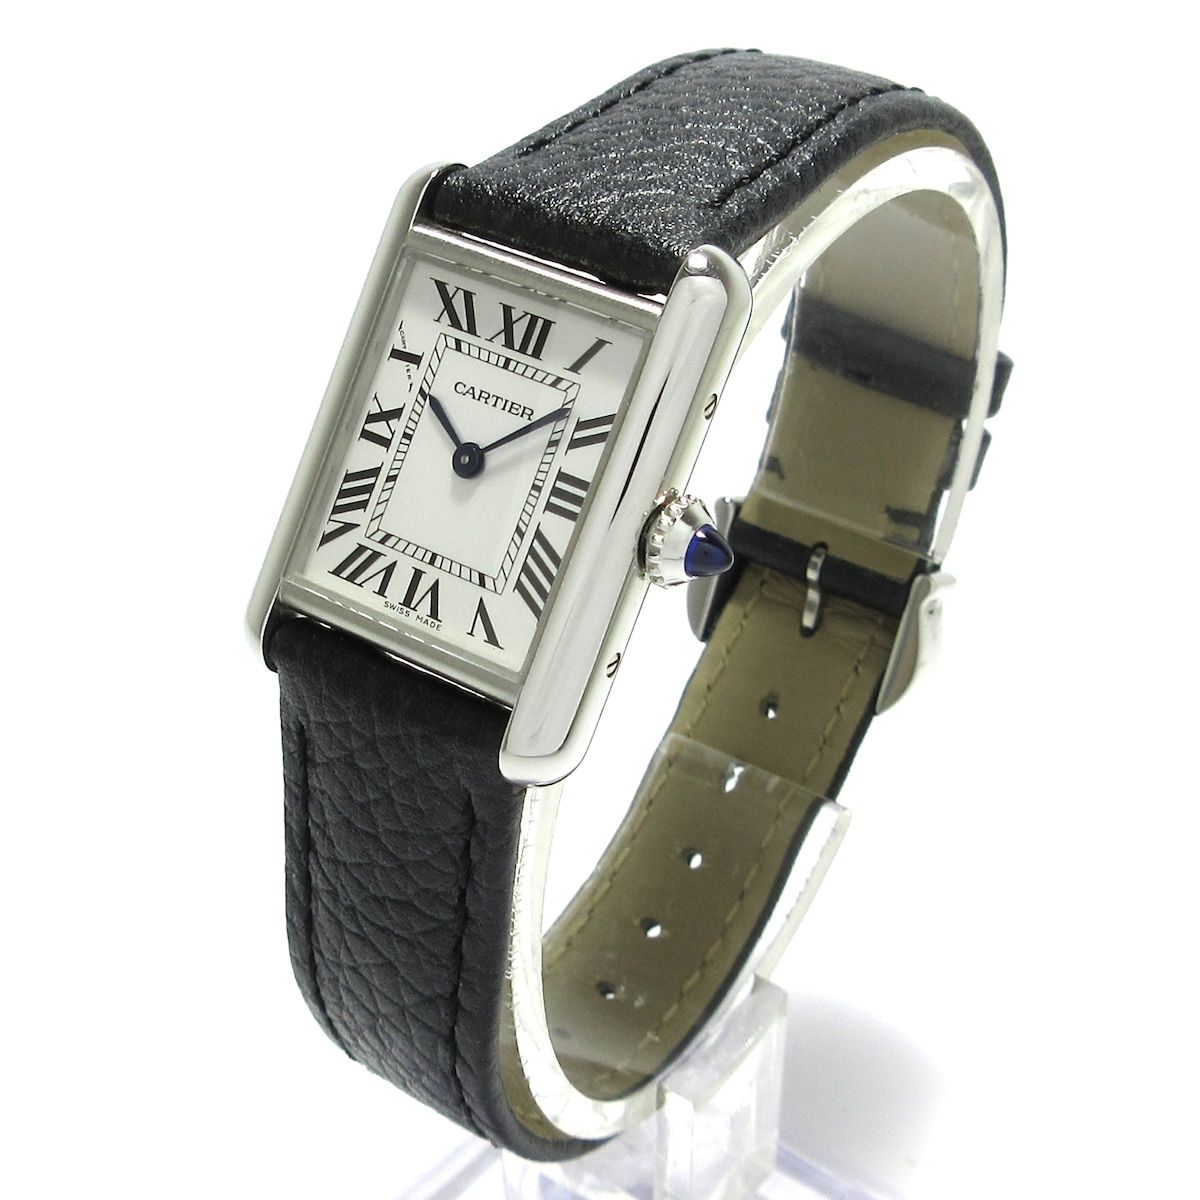 Cartier(カルティエ) 腕時計 マストタンクSM WSTA0042 レディース SS/革ベルト 白